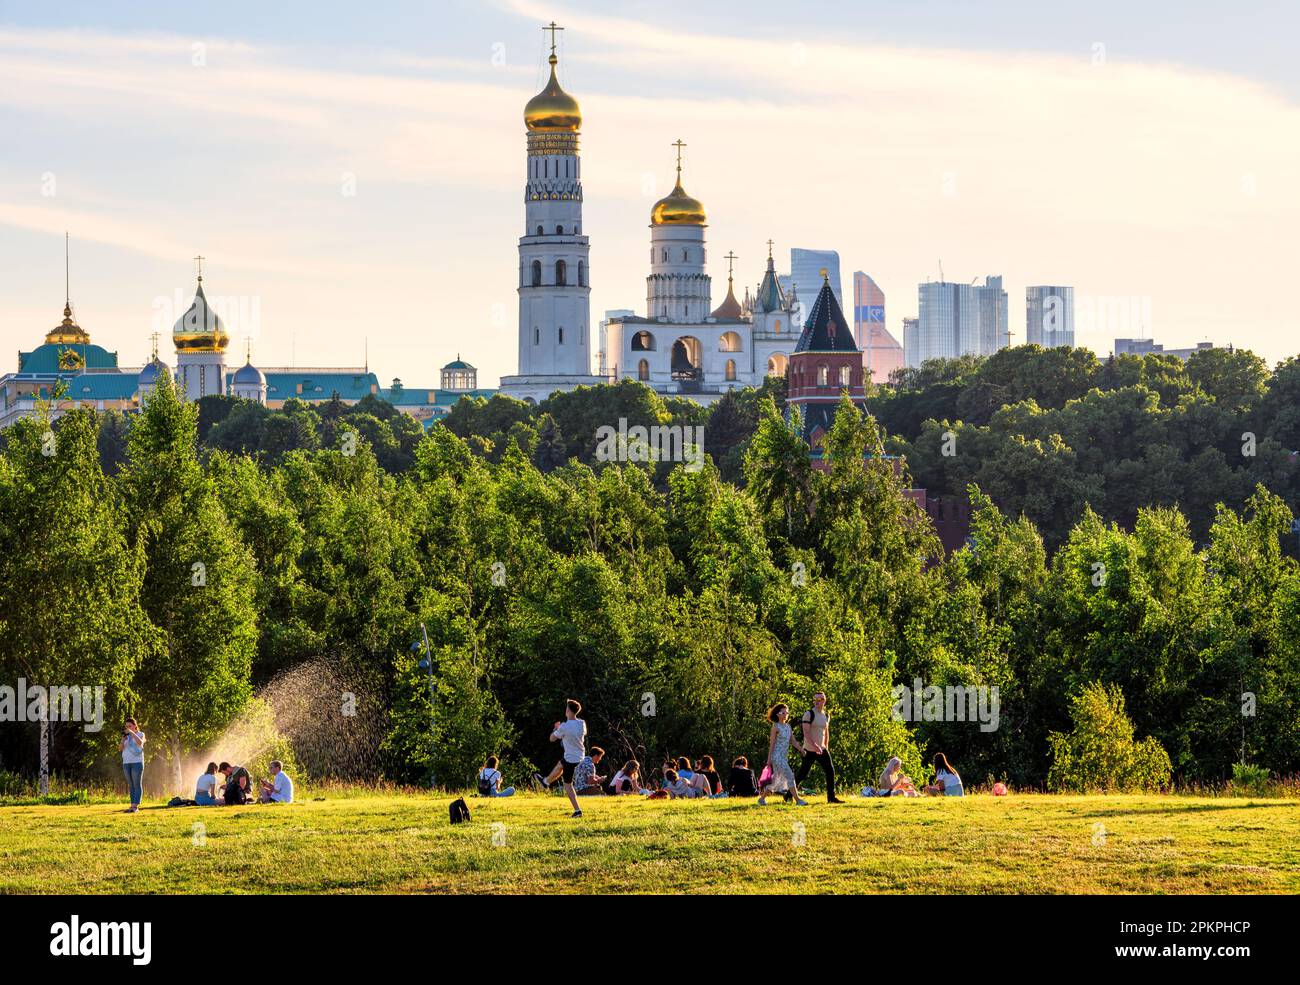 Les gens se reposent dans le parc Zaryadye, Moscou, Russie. Cet endroit est une attraction touristique de la ville. Cathédrales du Kremlin de Moscou dans le disbanc Banque D'Images